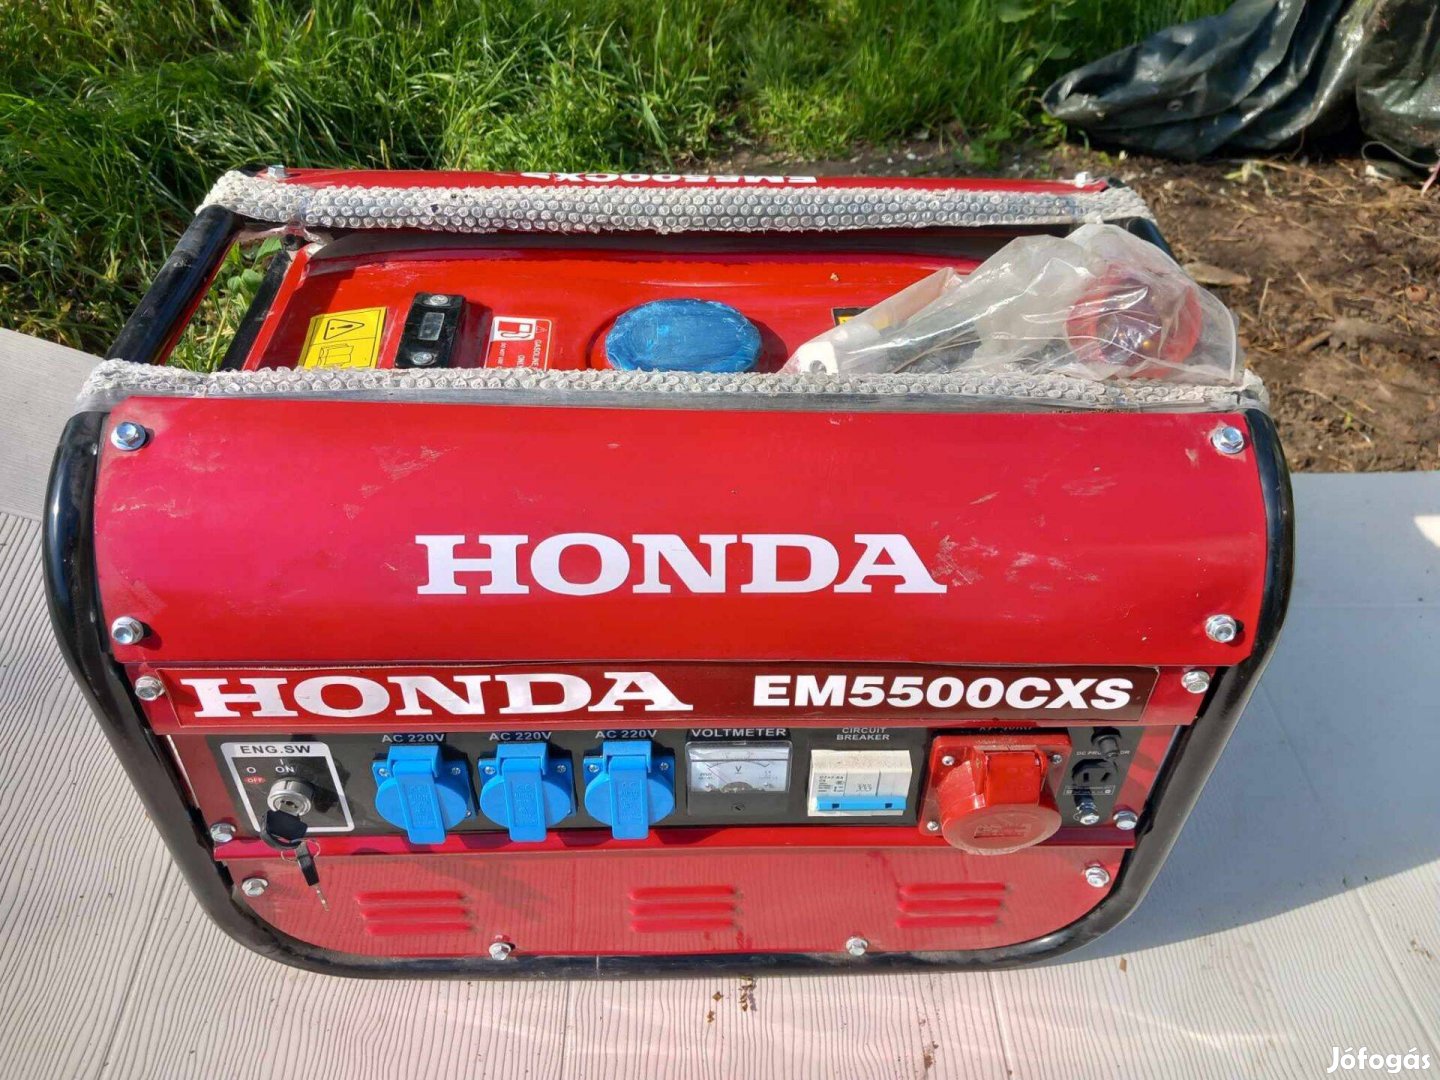 Új Honda áramfejlesztő EM5500Cxs Diesel